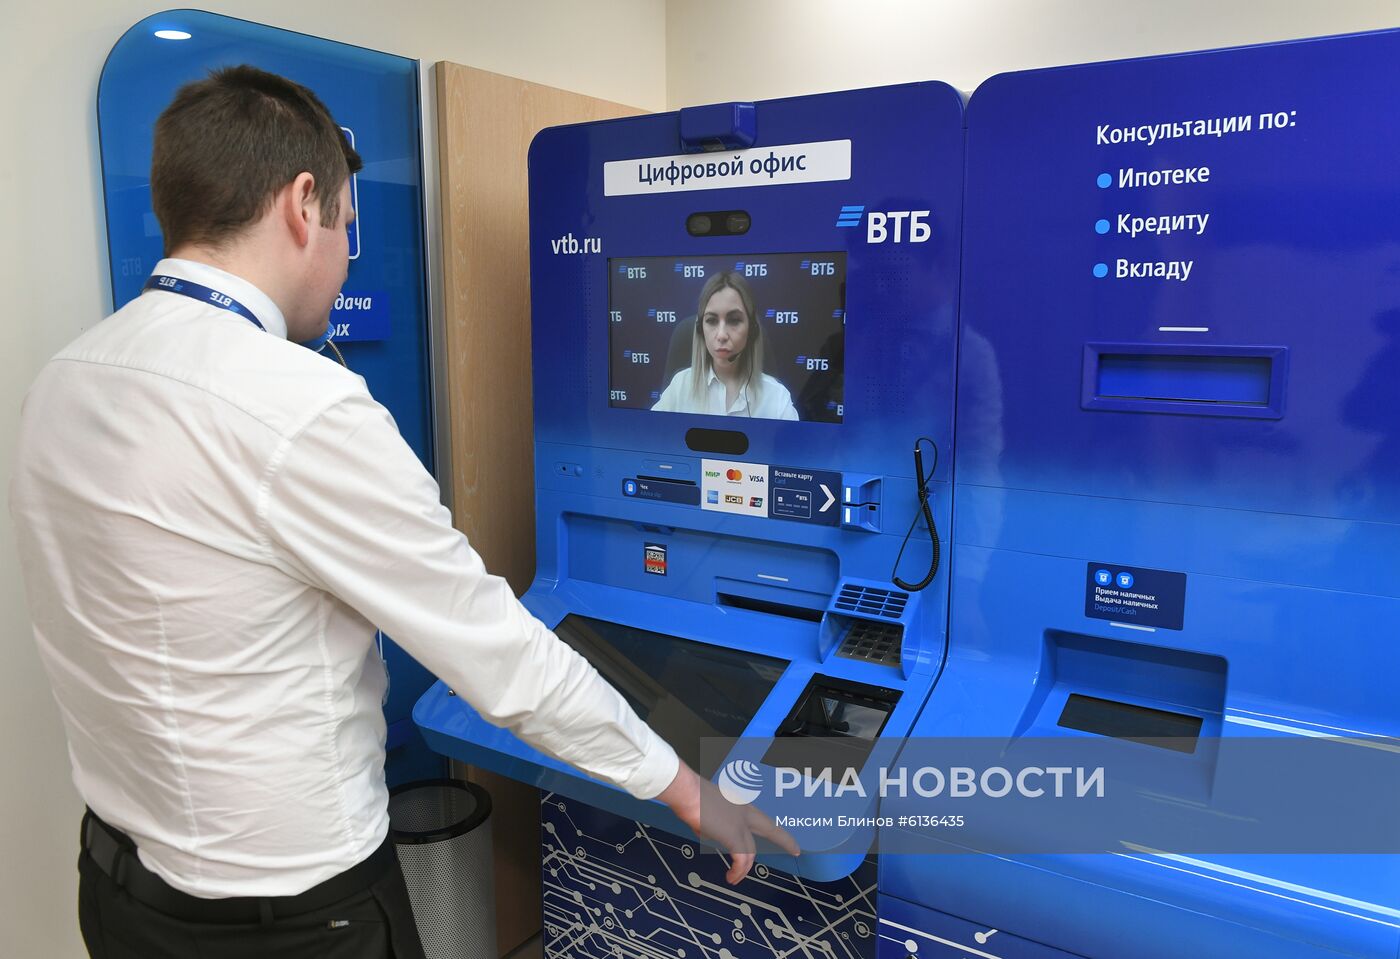 Банкоматы с поддержкой видеоконсультаций появились в Москве